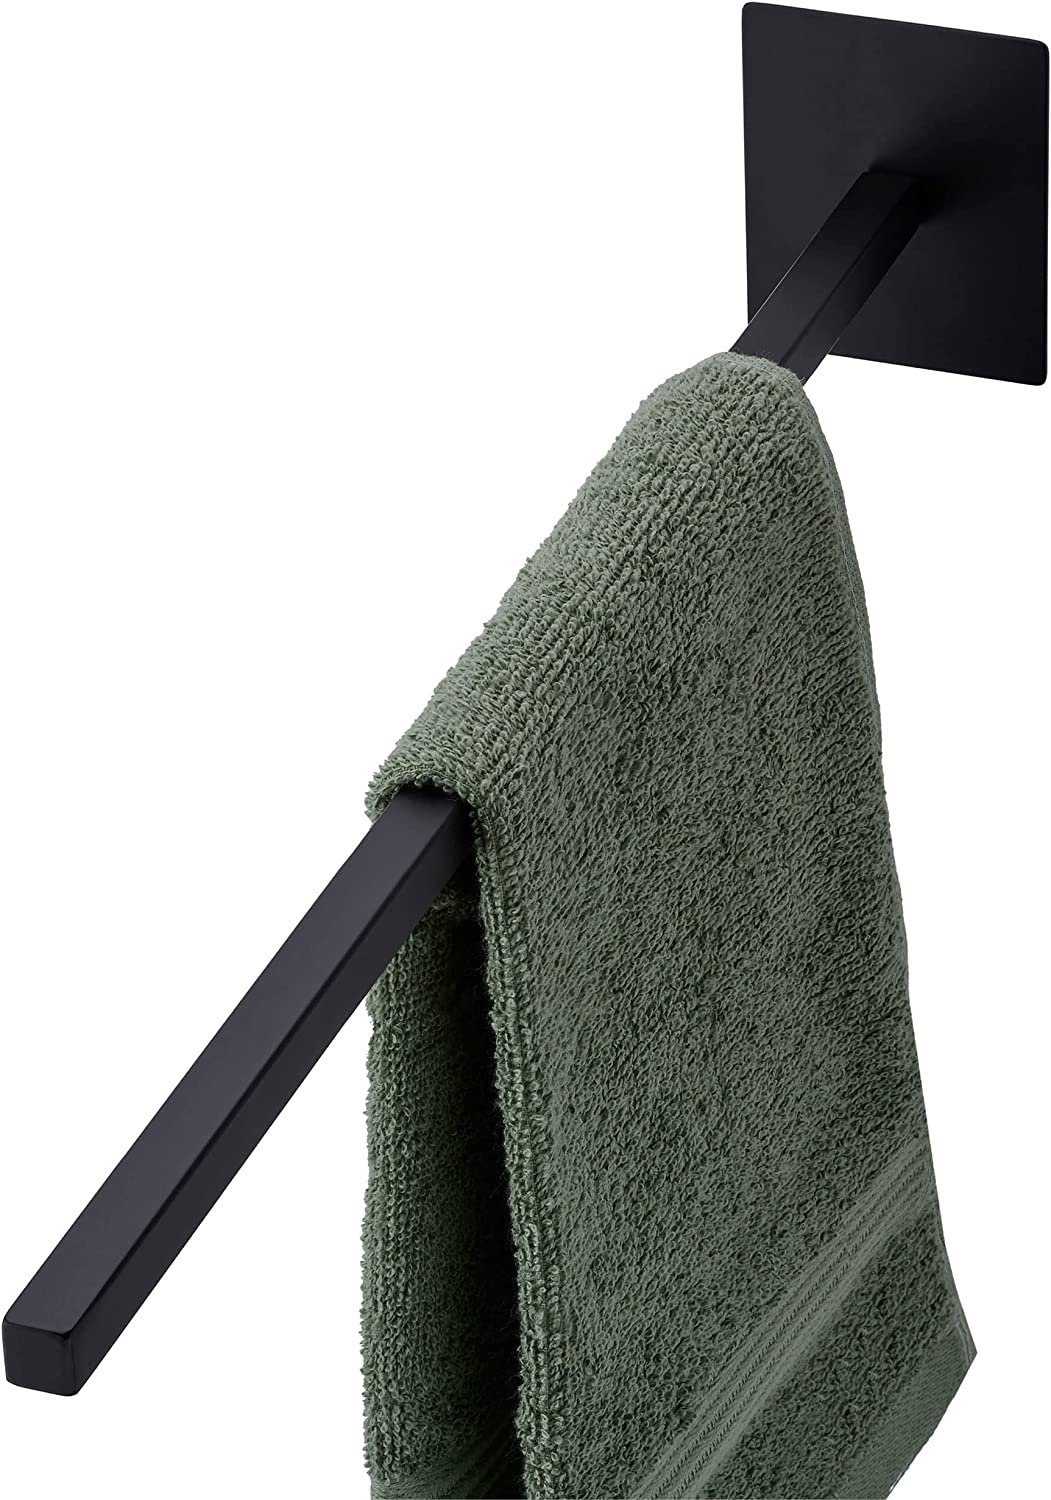 Eckige Edelstahl Handtuchhalter online kaufen | OTTO